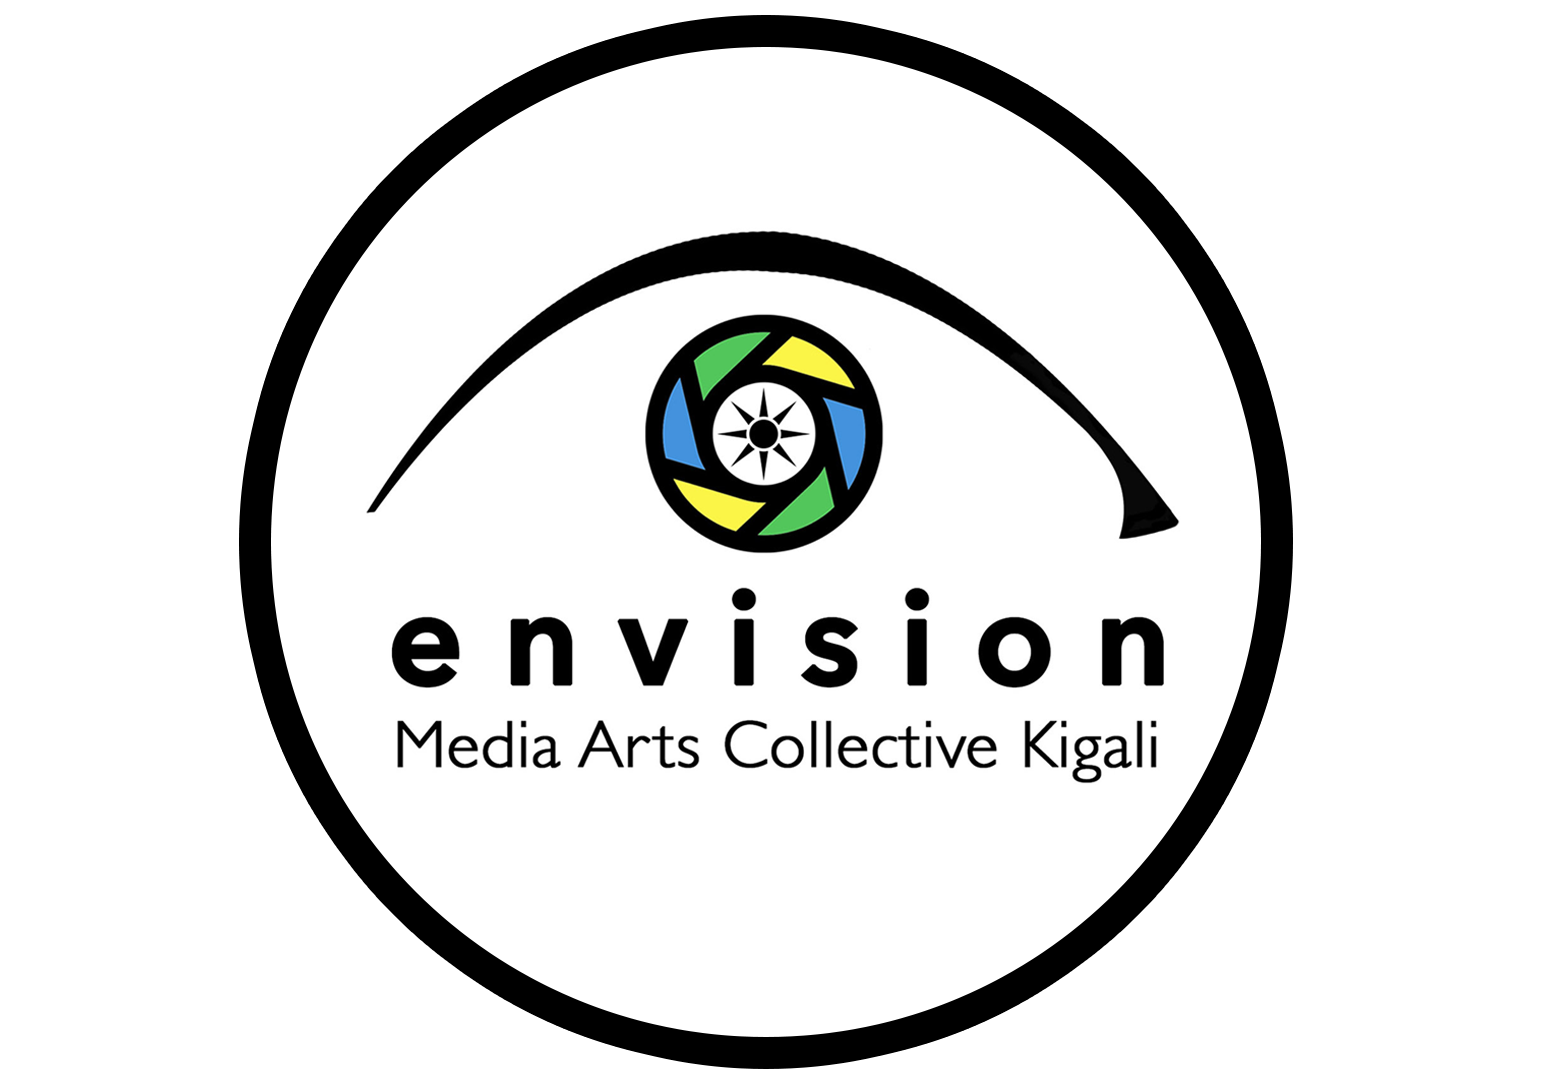 envision logo circle.png